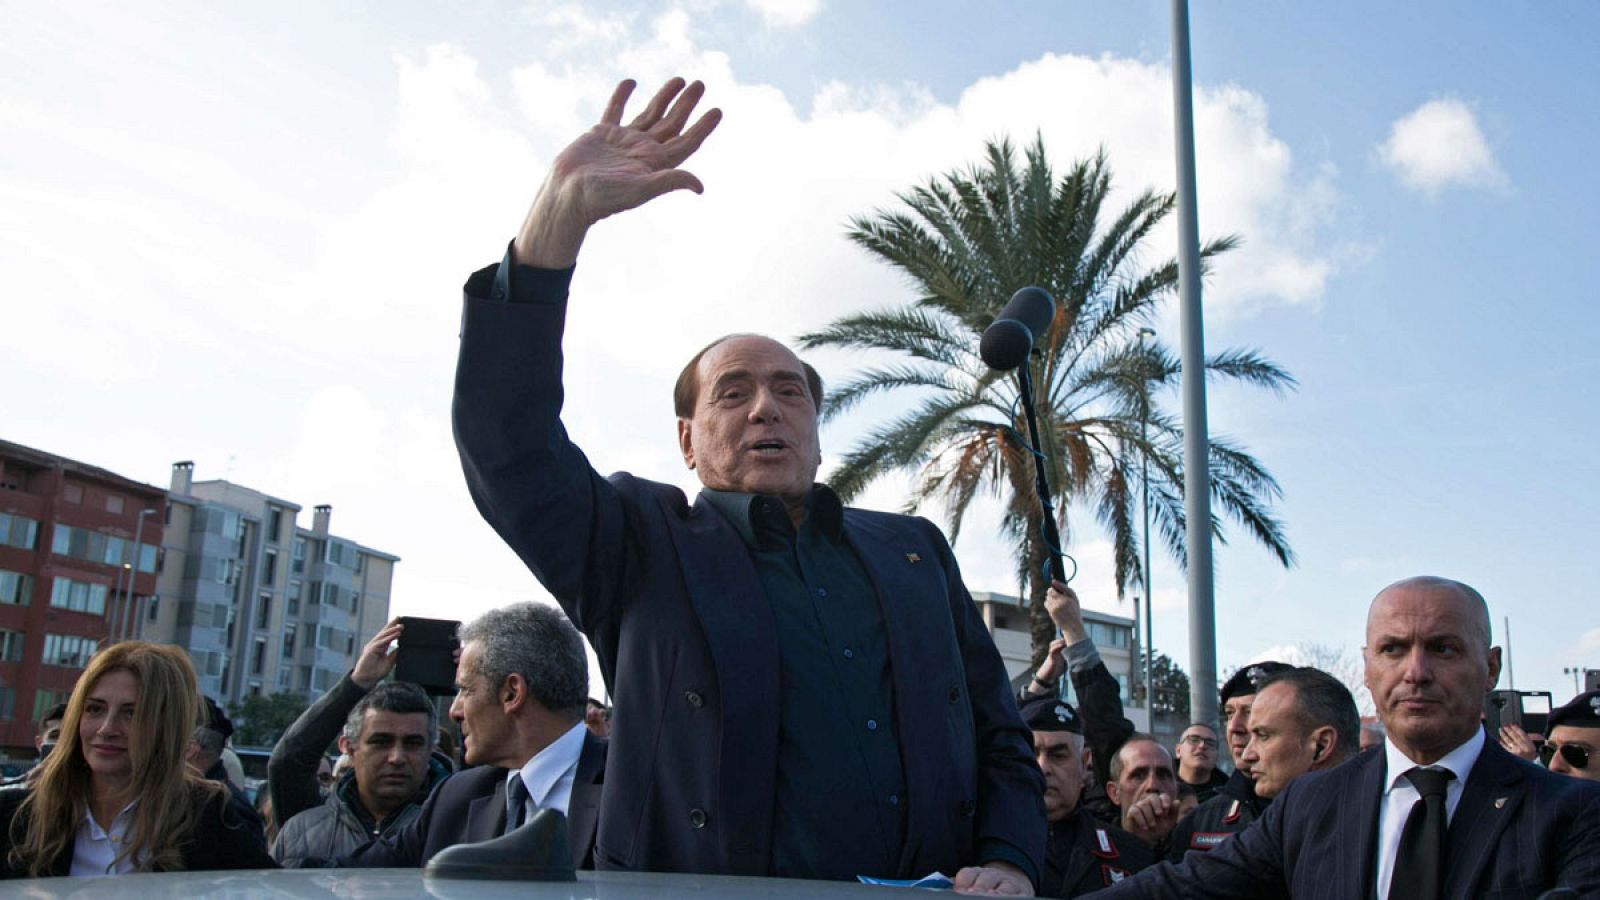 Berlusconi anuncia su candidatura a las elecciones europeas